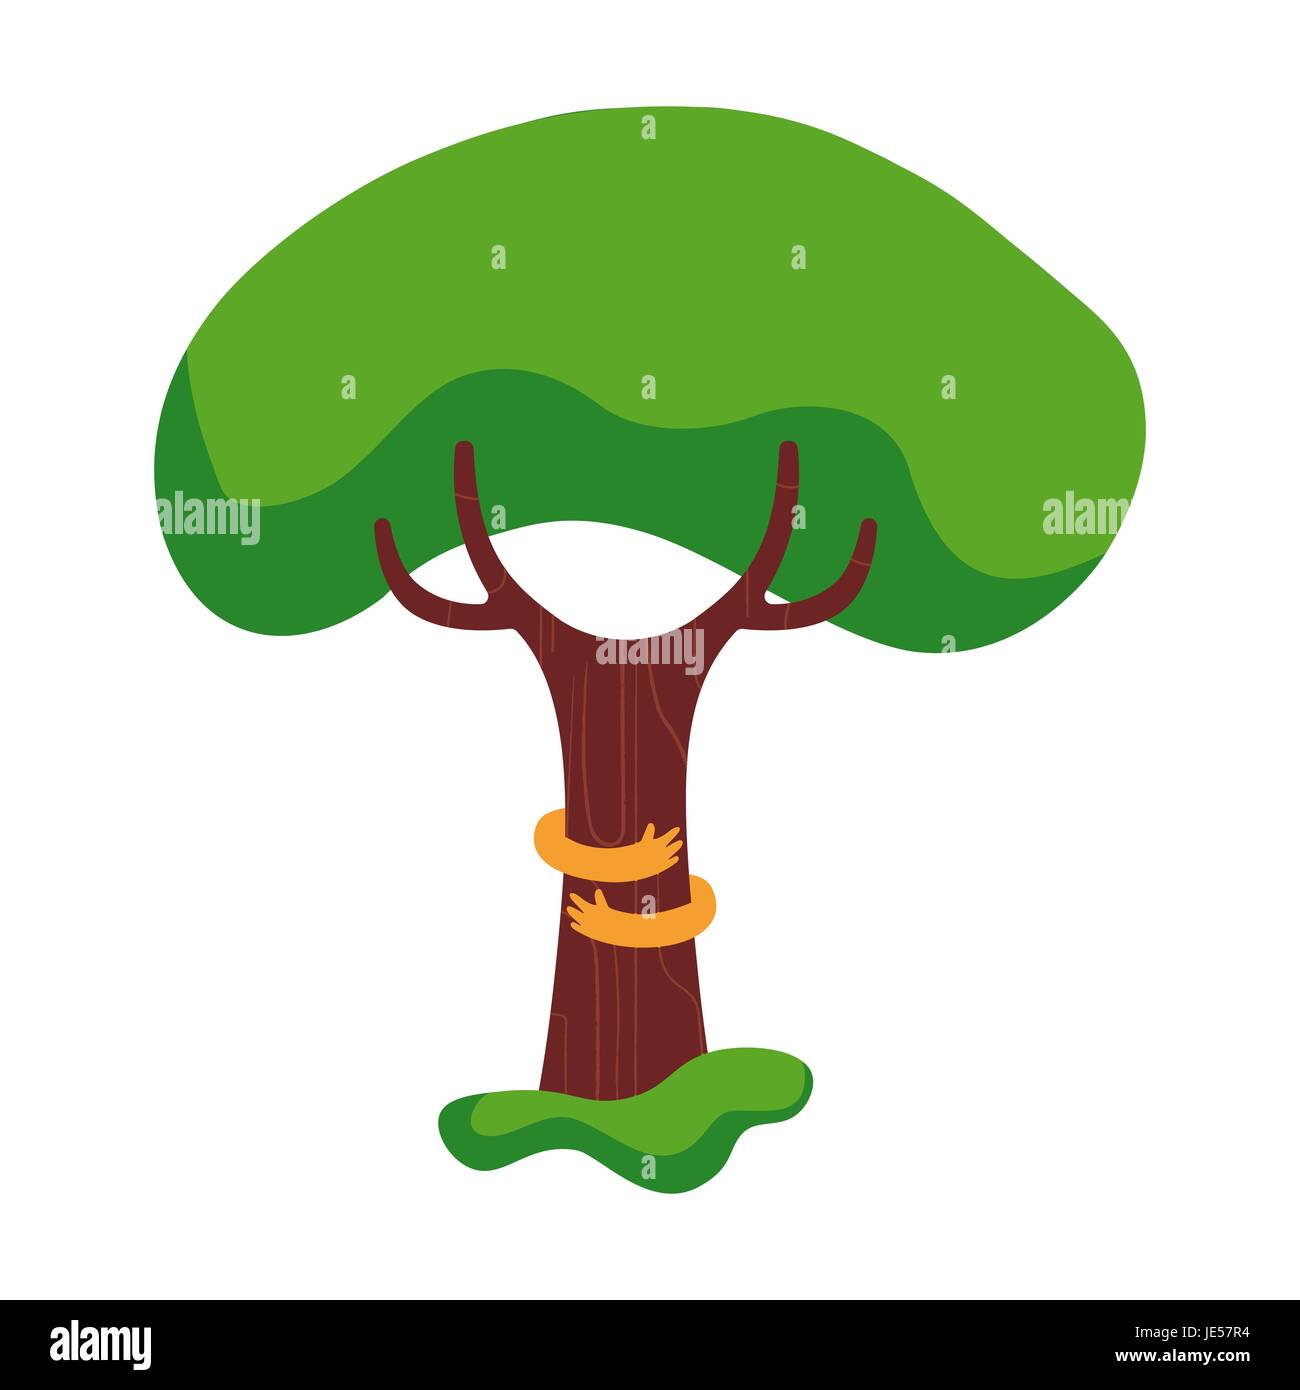 Baum Umarmung Illustration mit schönen Menschenhand Umwelt Liebe Konzeptdesign für Natur-Help-Projekt. EPS10 Vektor. Stock Vektor